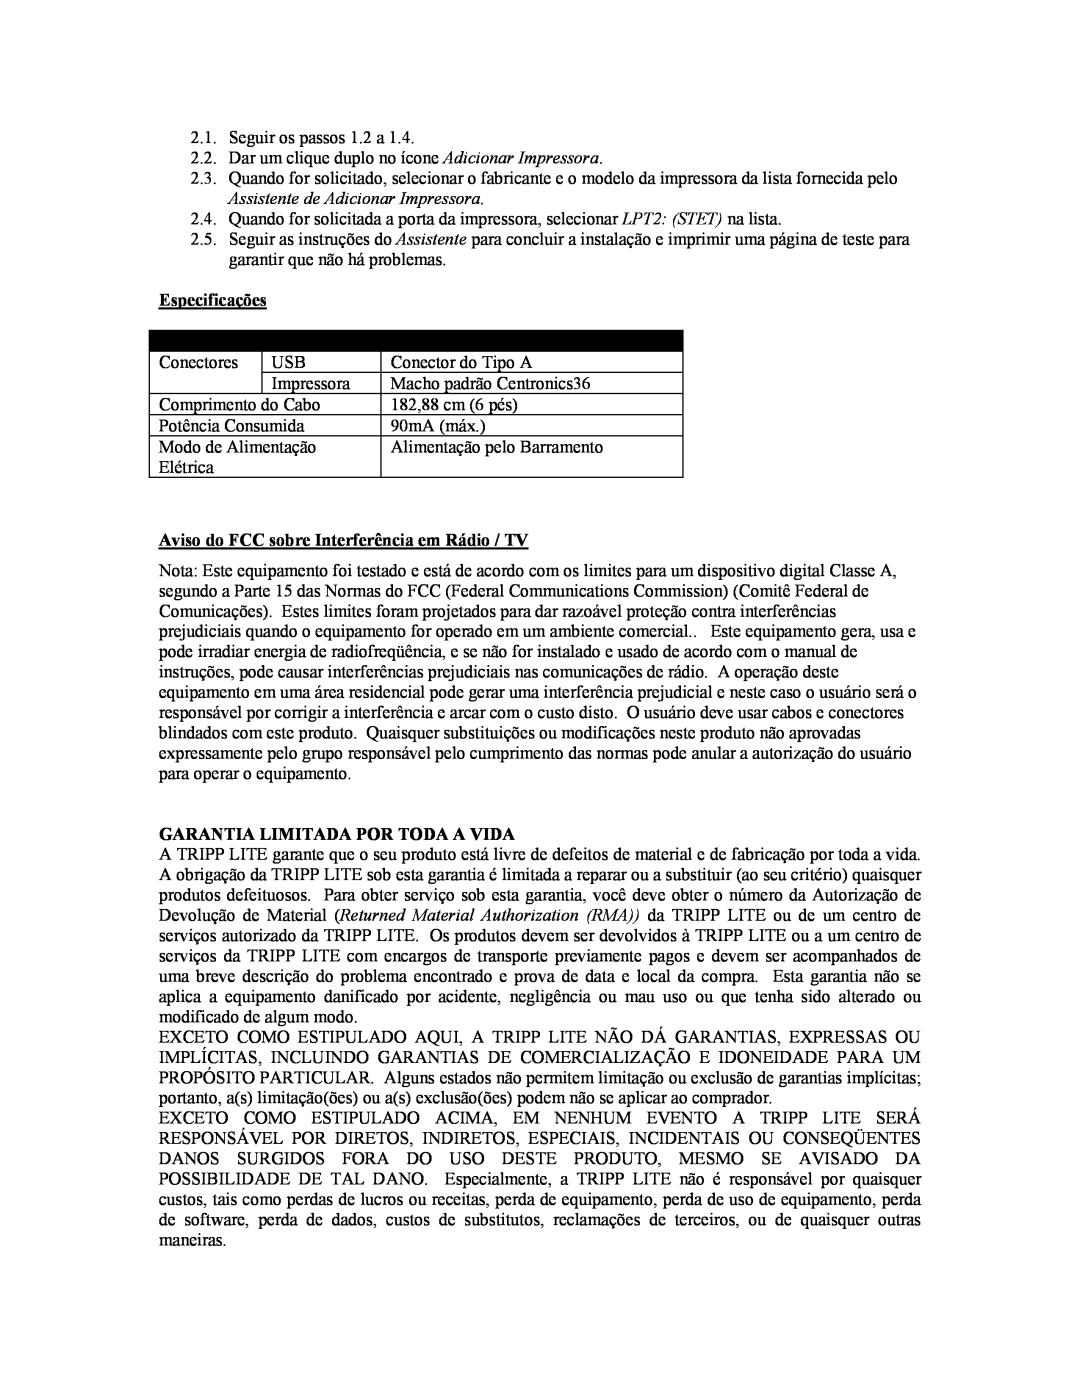 Tripp Lite U206-006-R user manual Especificações, Função, Especificação, Aviso do FCC sobre Interferência em Rádio / TV 